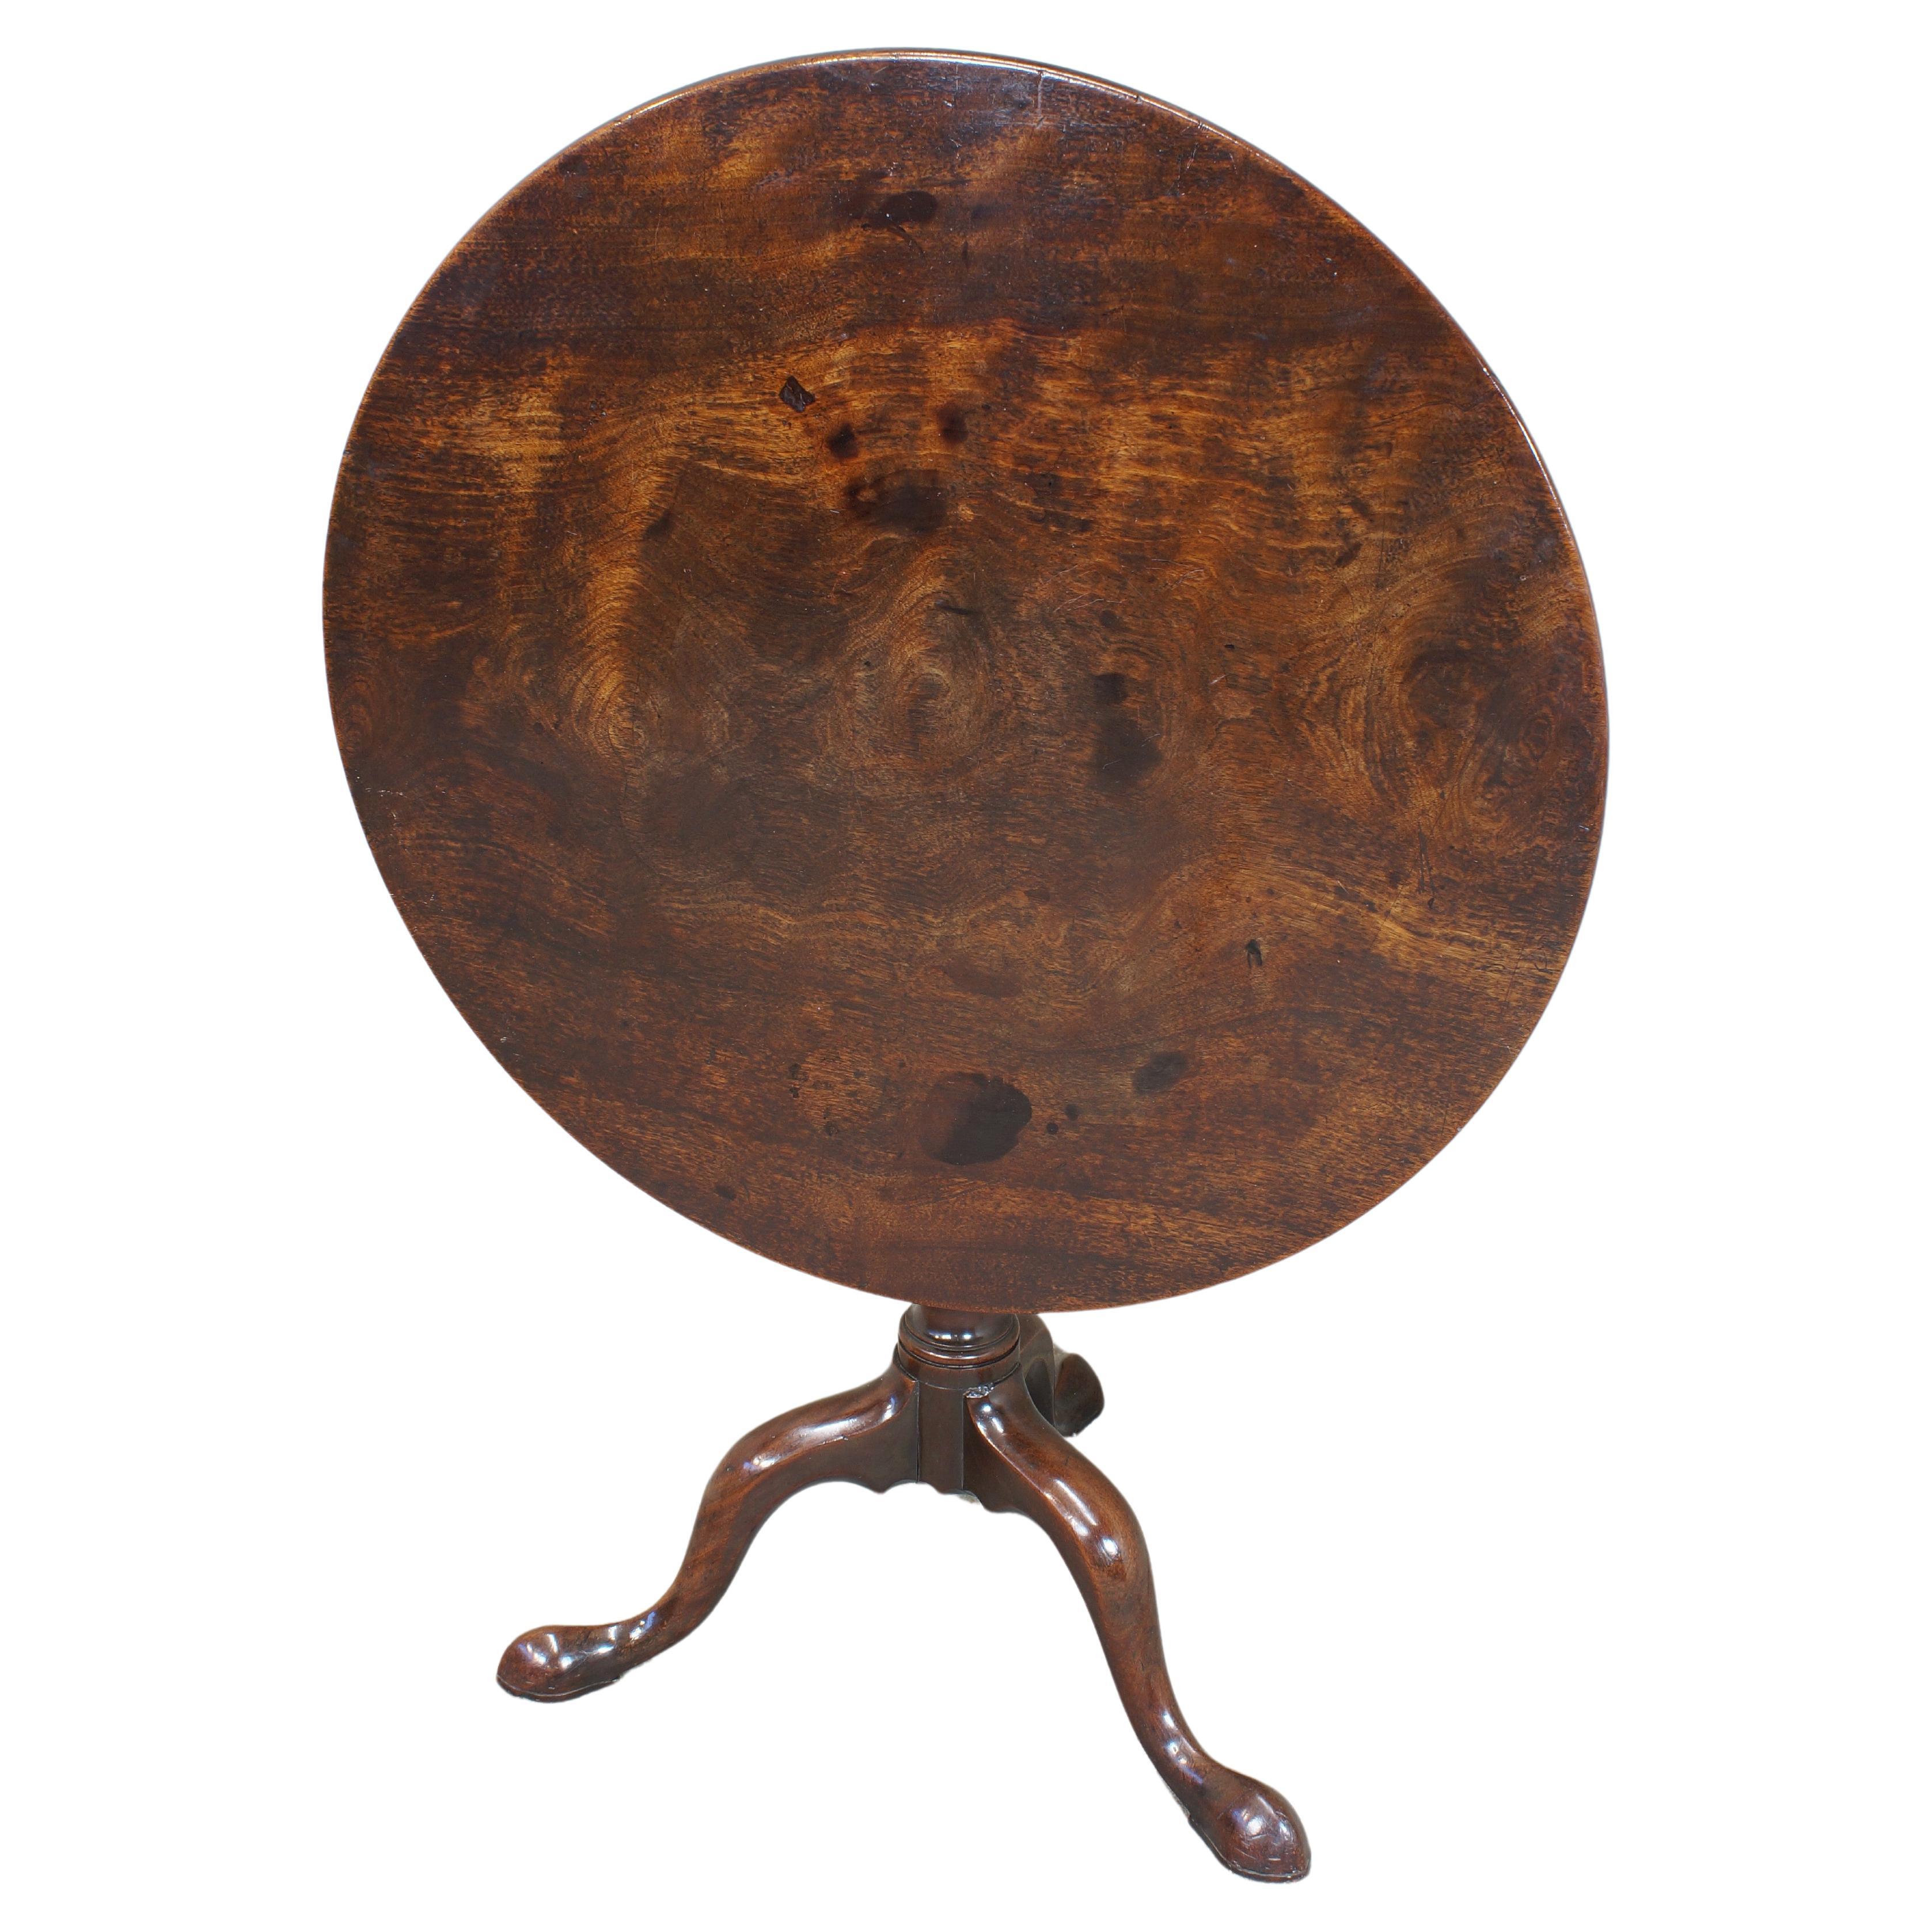 Ein feiner Mahagoni-Dreibein-Tisch aus dem 18. Jahrhundert.